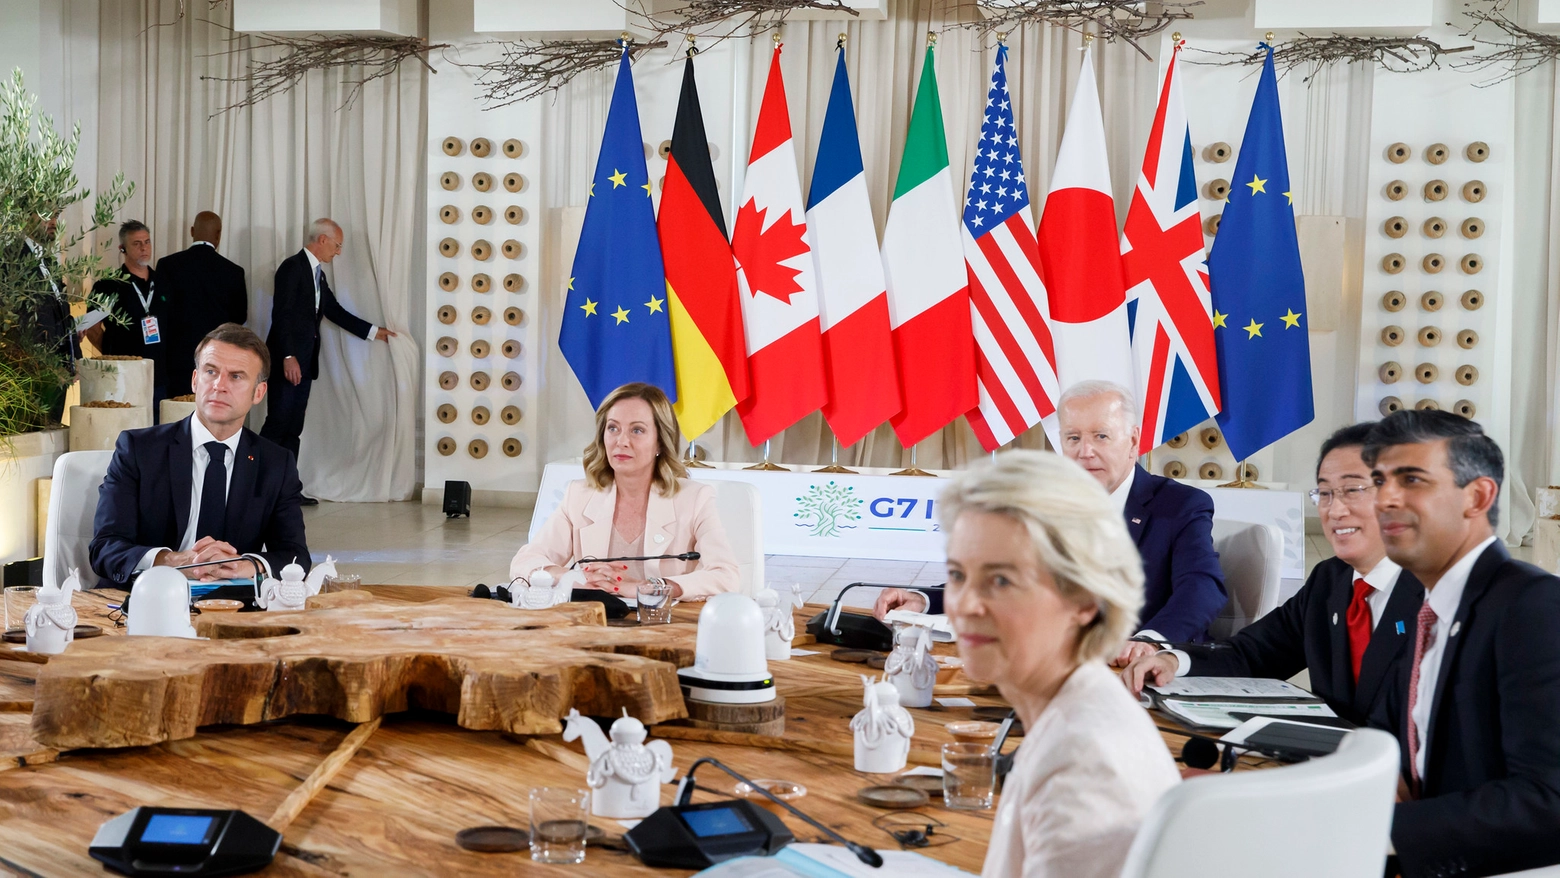 La presidente della Commissione Europea Von der Leyen insieme agli altri leader al G7